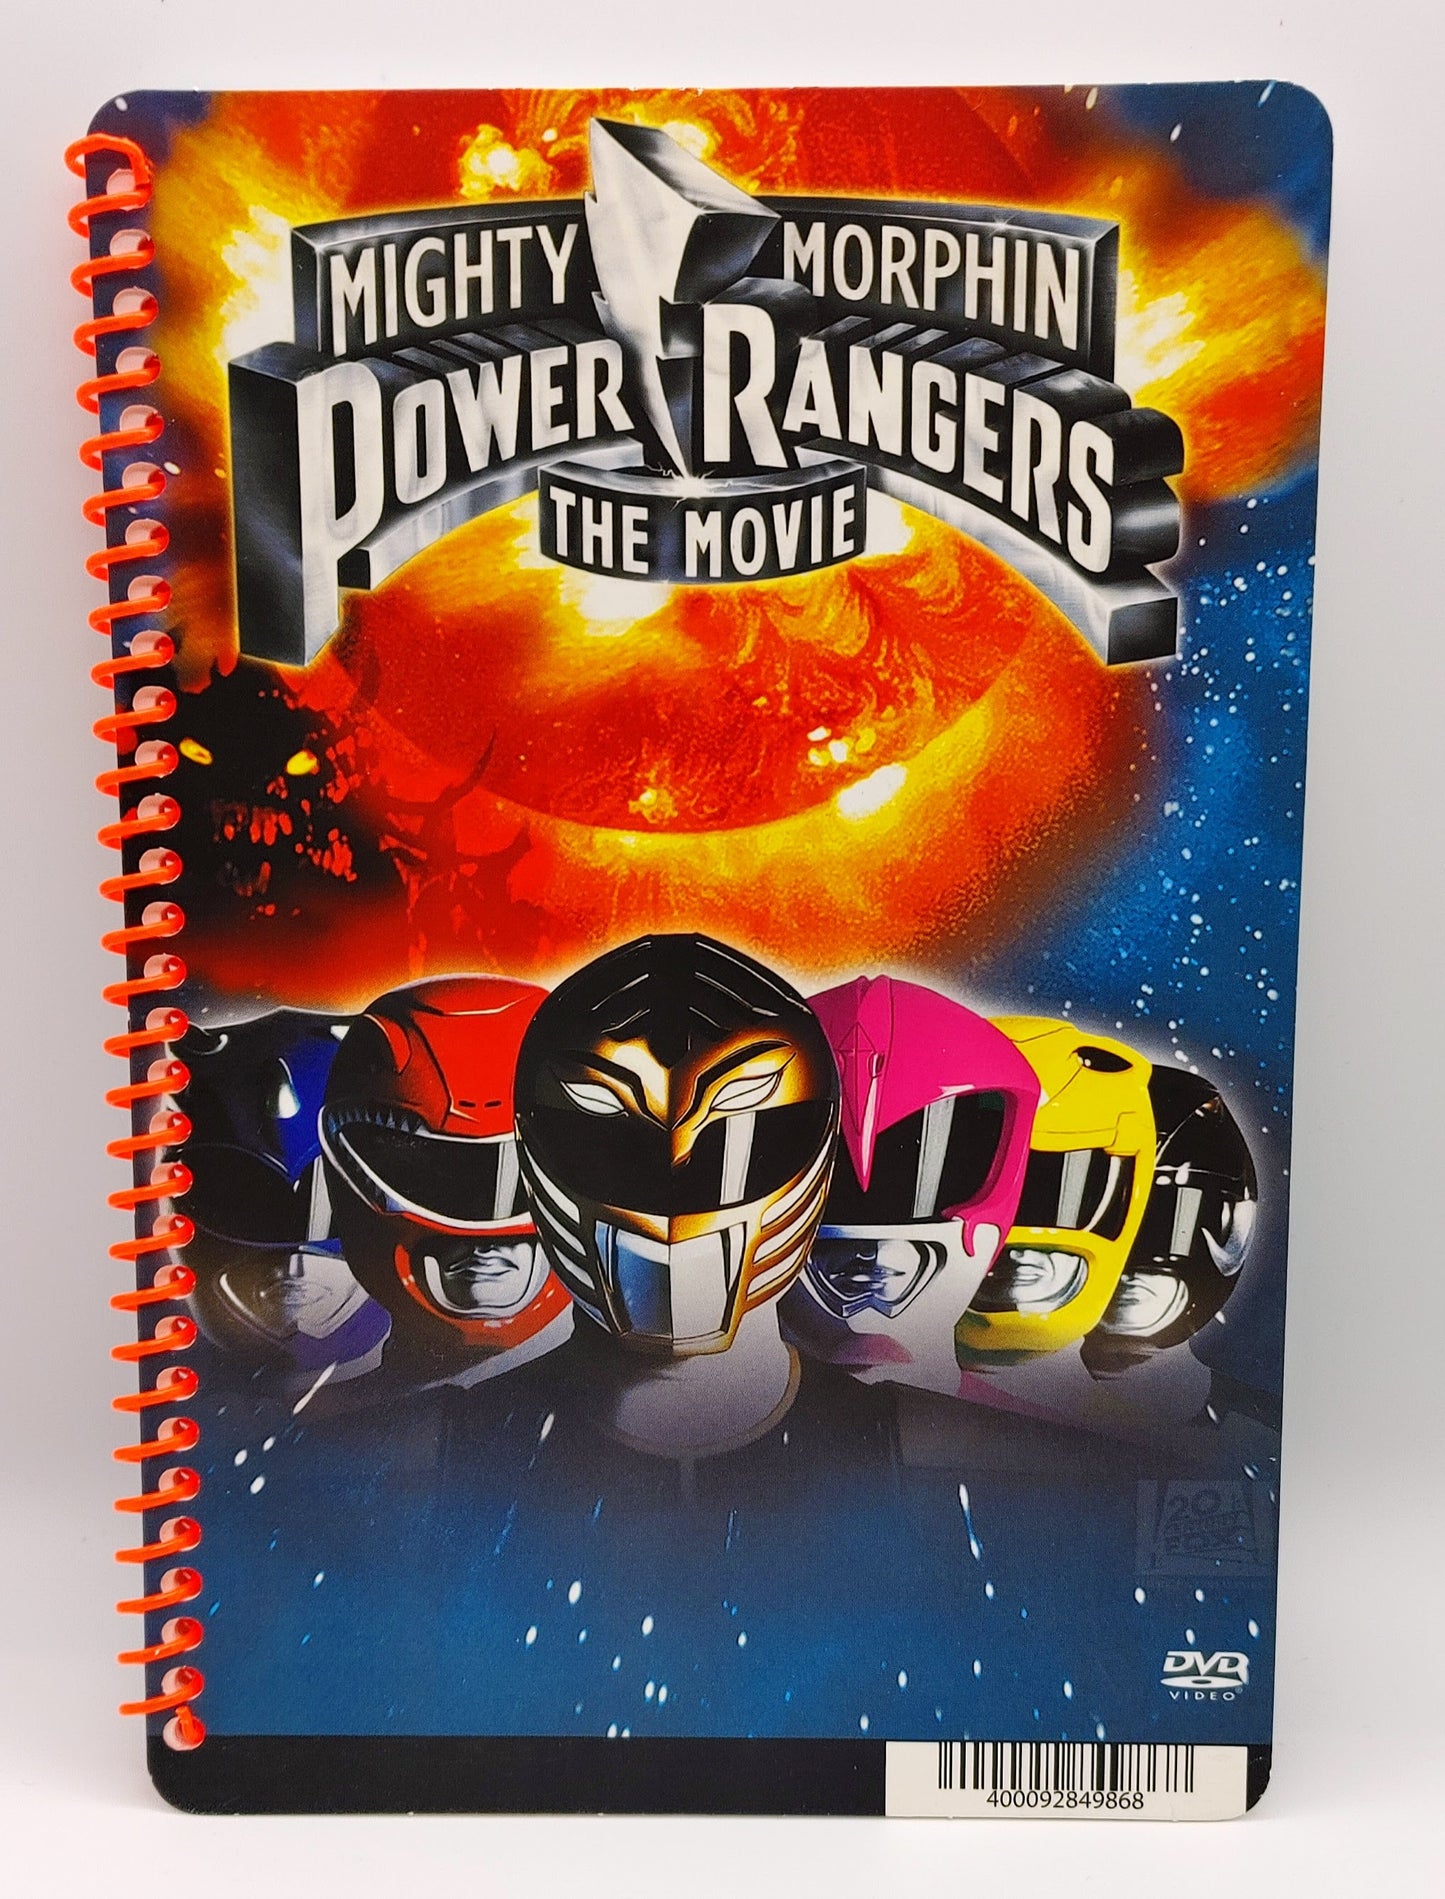 Movie Sketchbook - Power Rangers